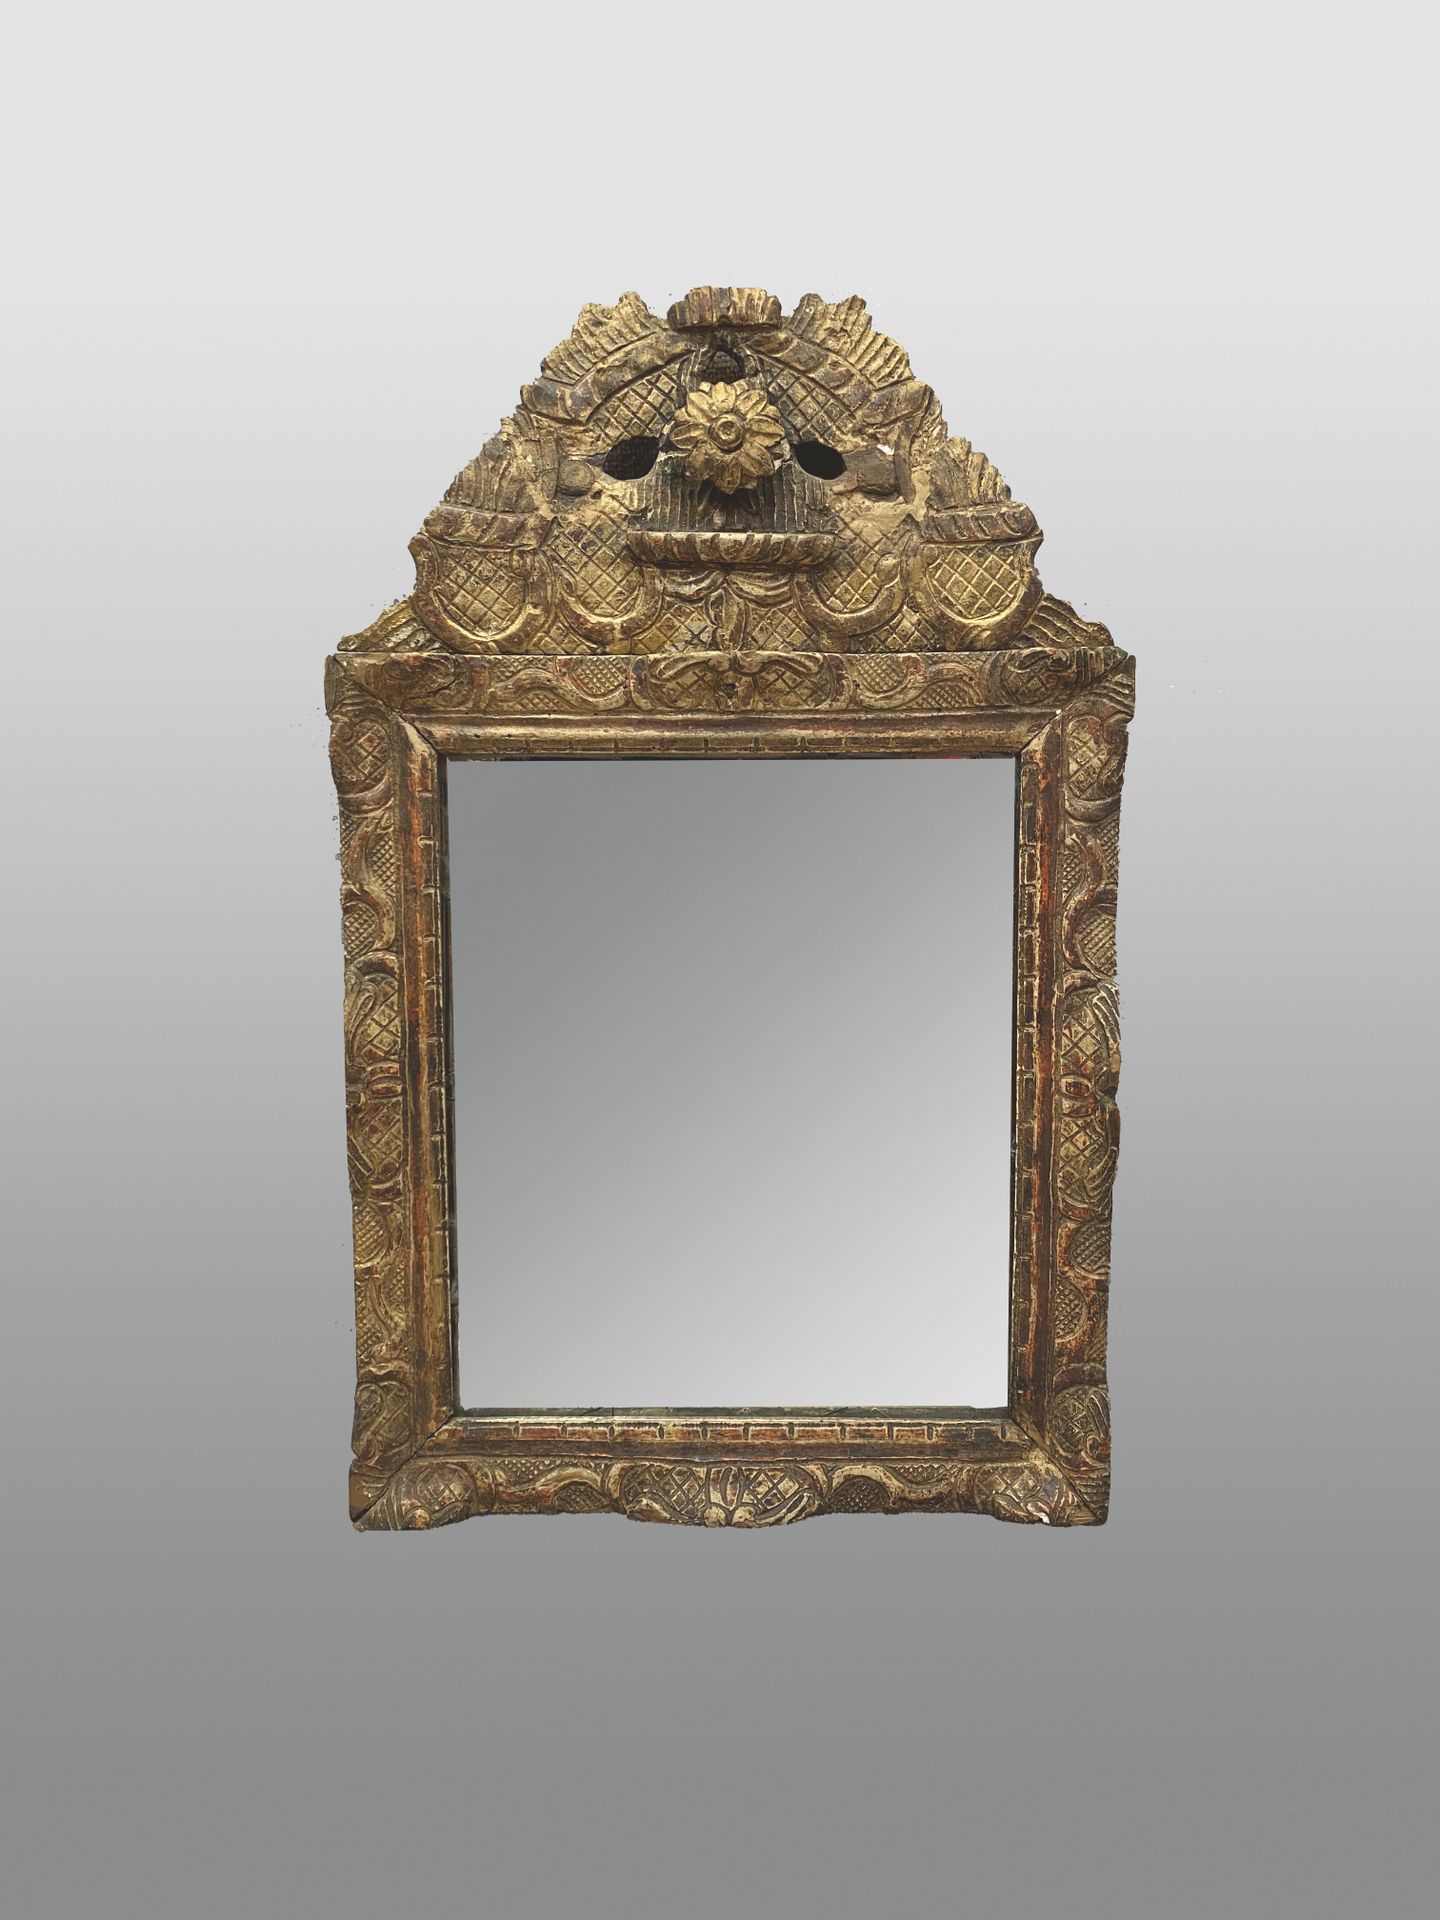 Null Specchio a frontone in legno intagliato con croci, fermagli e fiori.

XVIII&hellip;